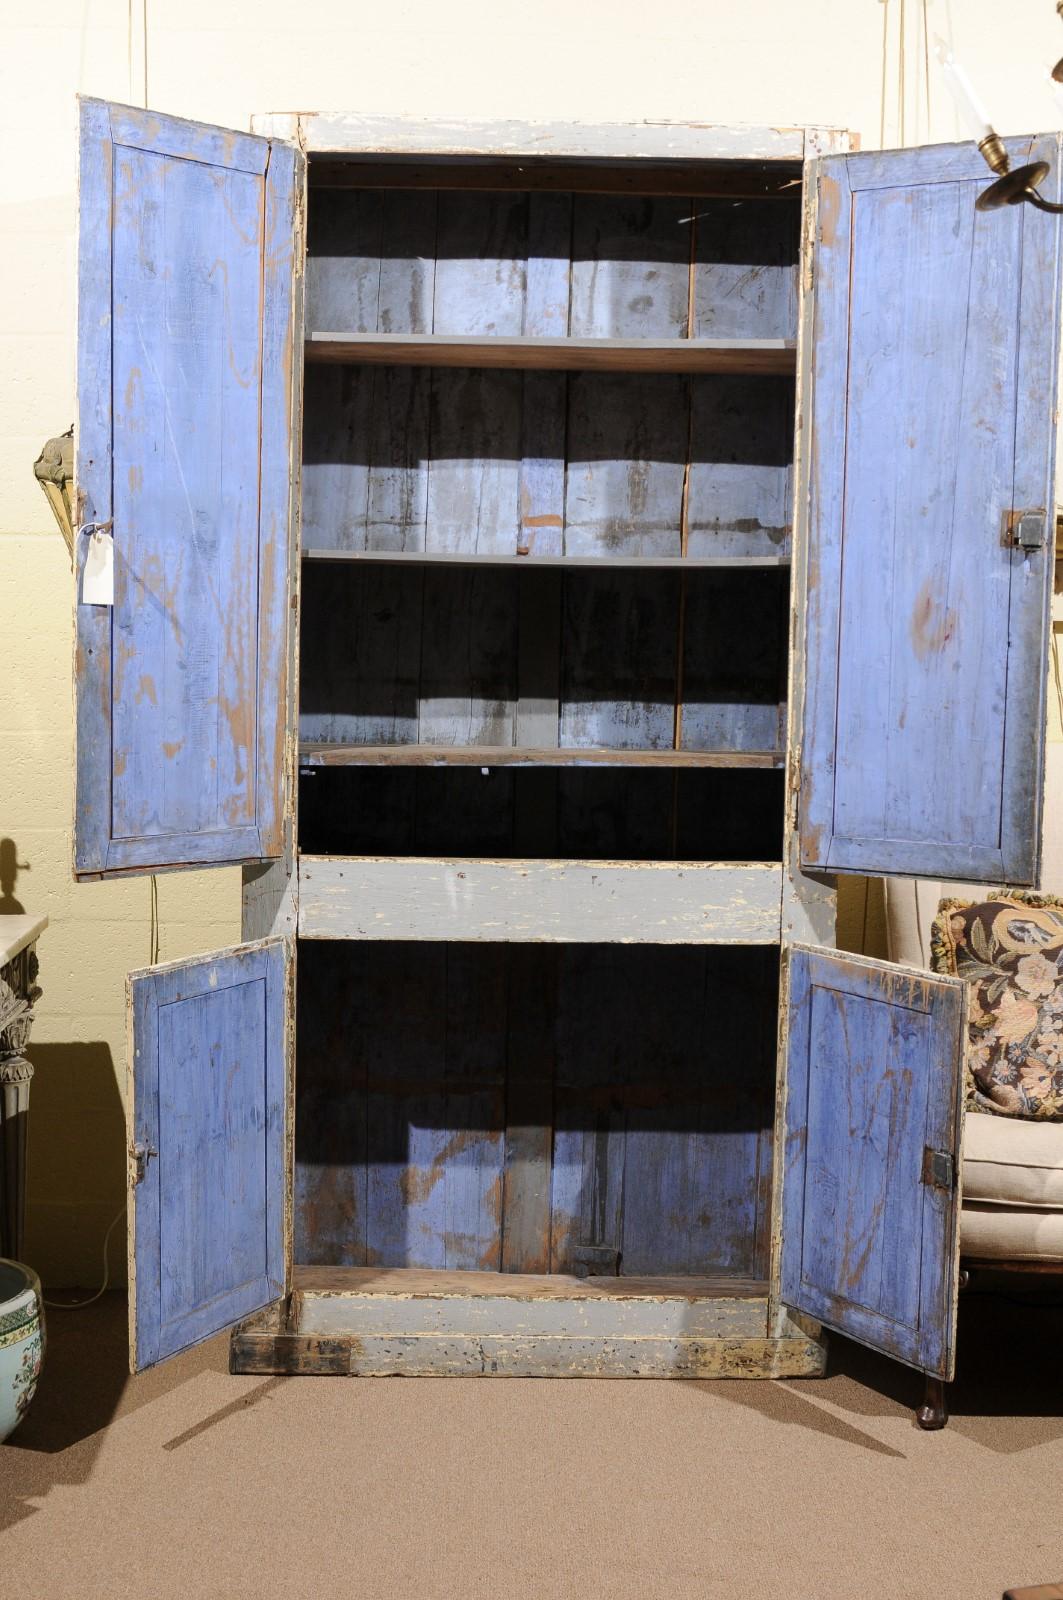 Cabinet / armoire peint en bleu clair avec 4 portes de cabinet et intérieur peint en bleu azur, France, 19e siècle. Armoires supérieures équipées d'étagères. Pas de corniche disponible.